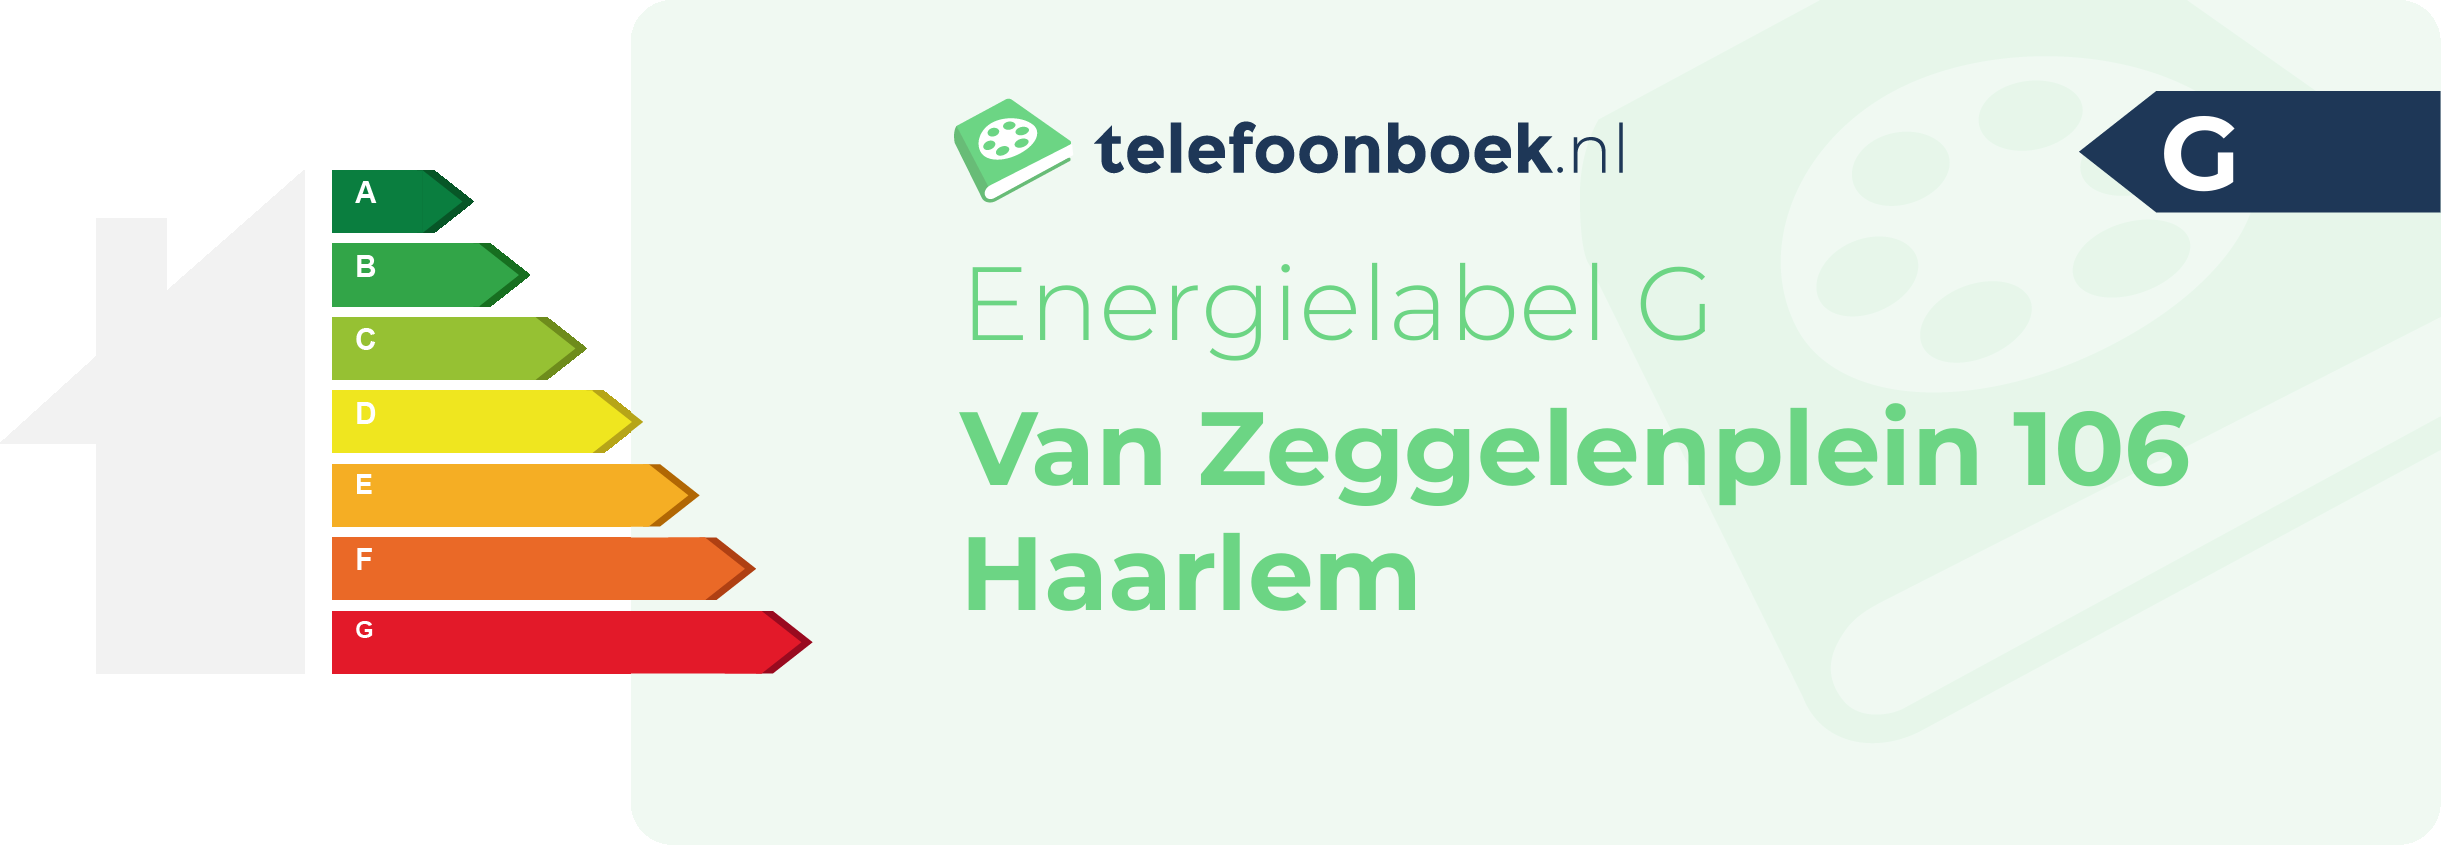 Energielabel Van Zeggelenplein 106 Haarlem